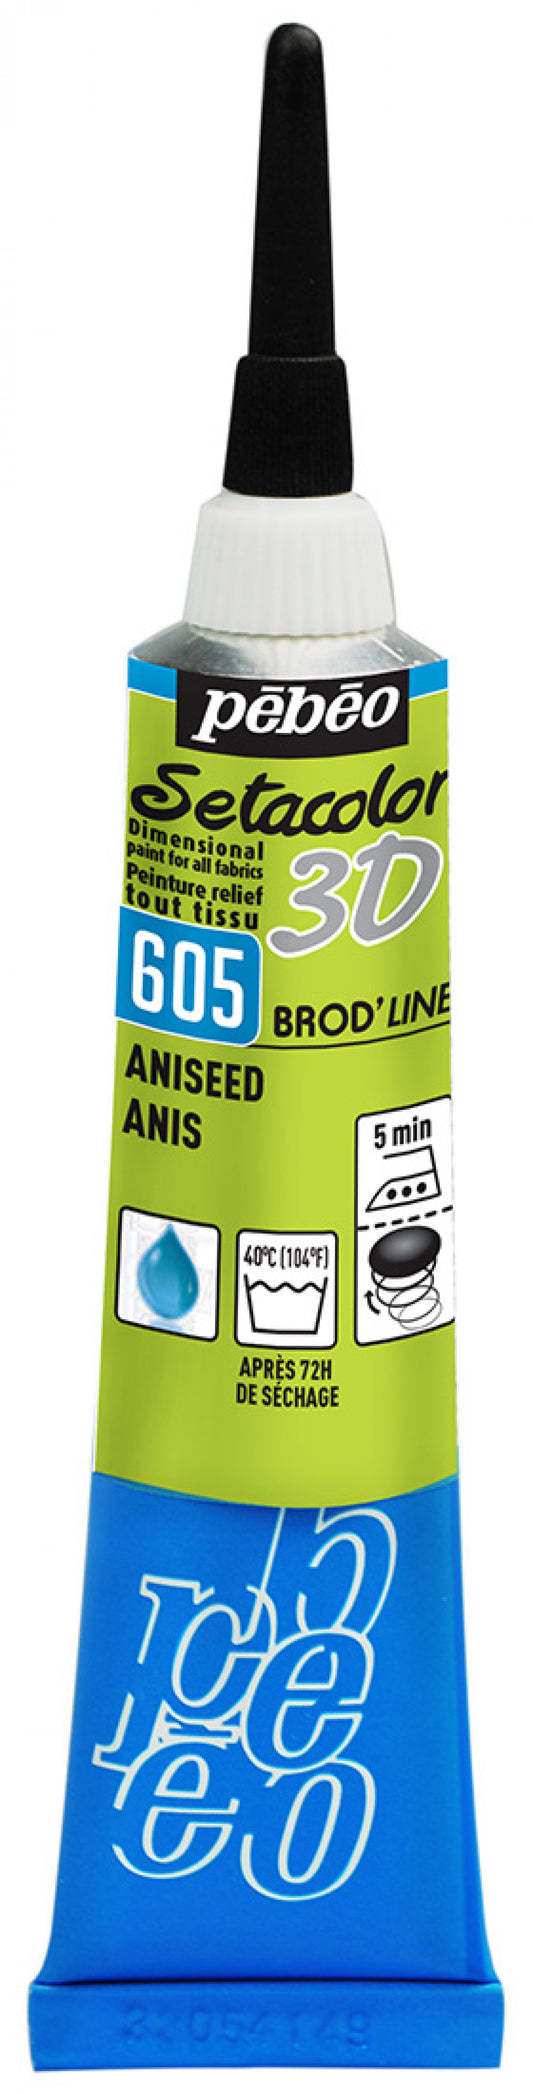 Setacolor 3D Brod'Line Col. 605 Anis**